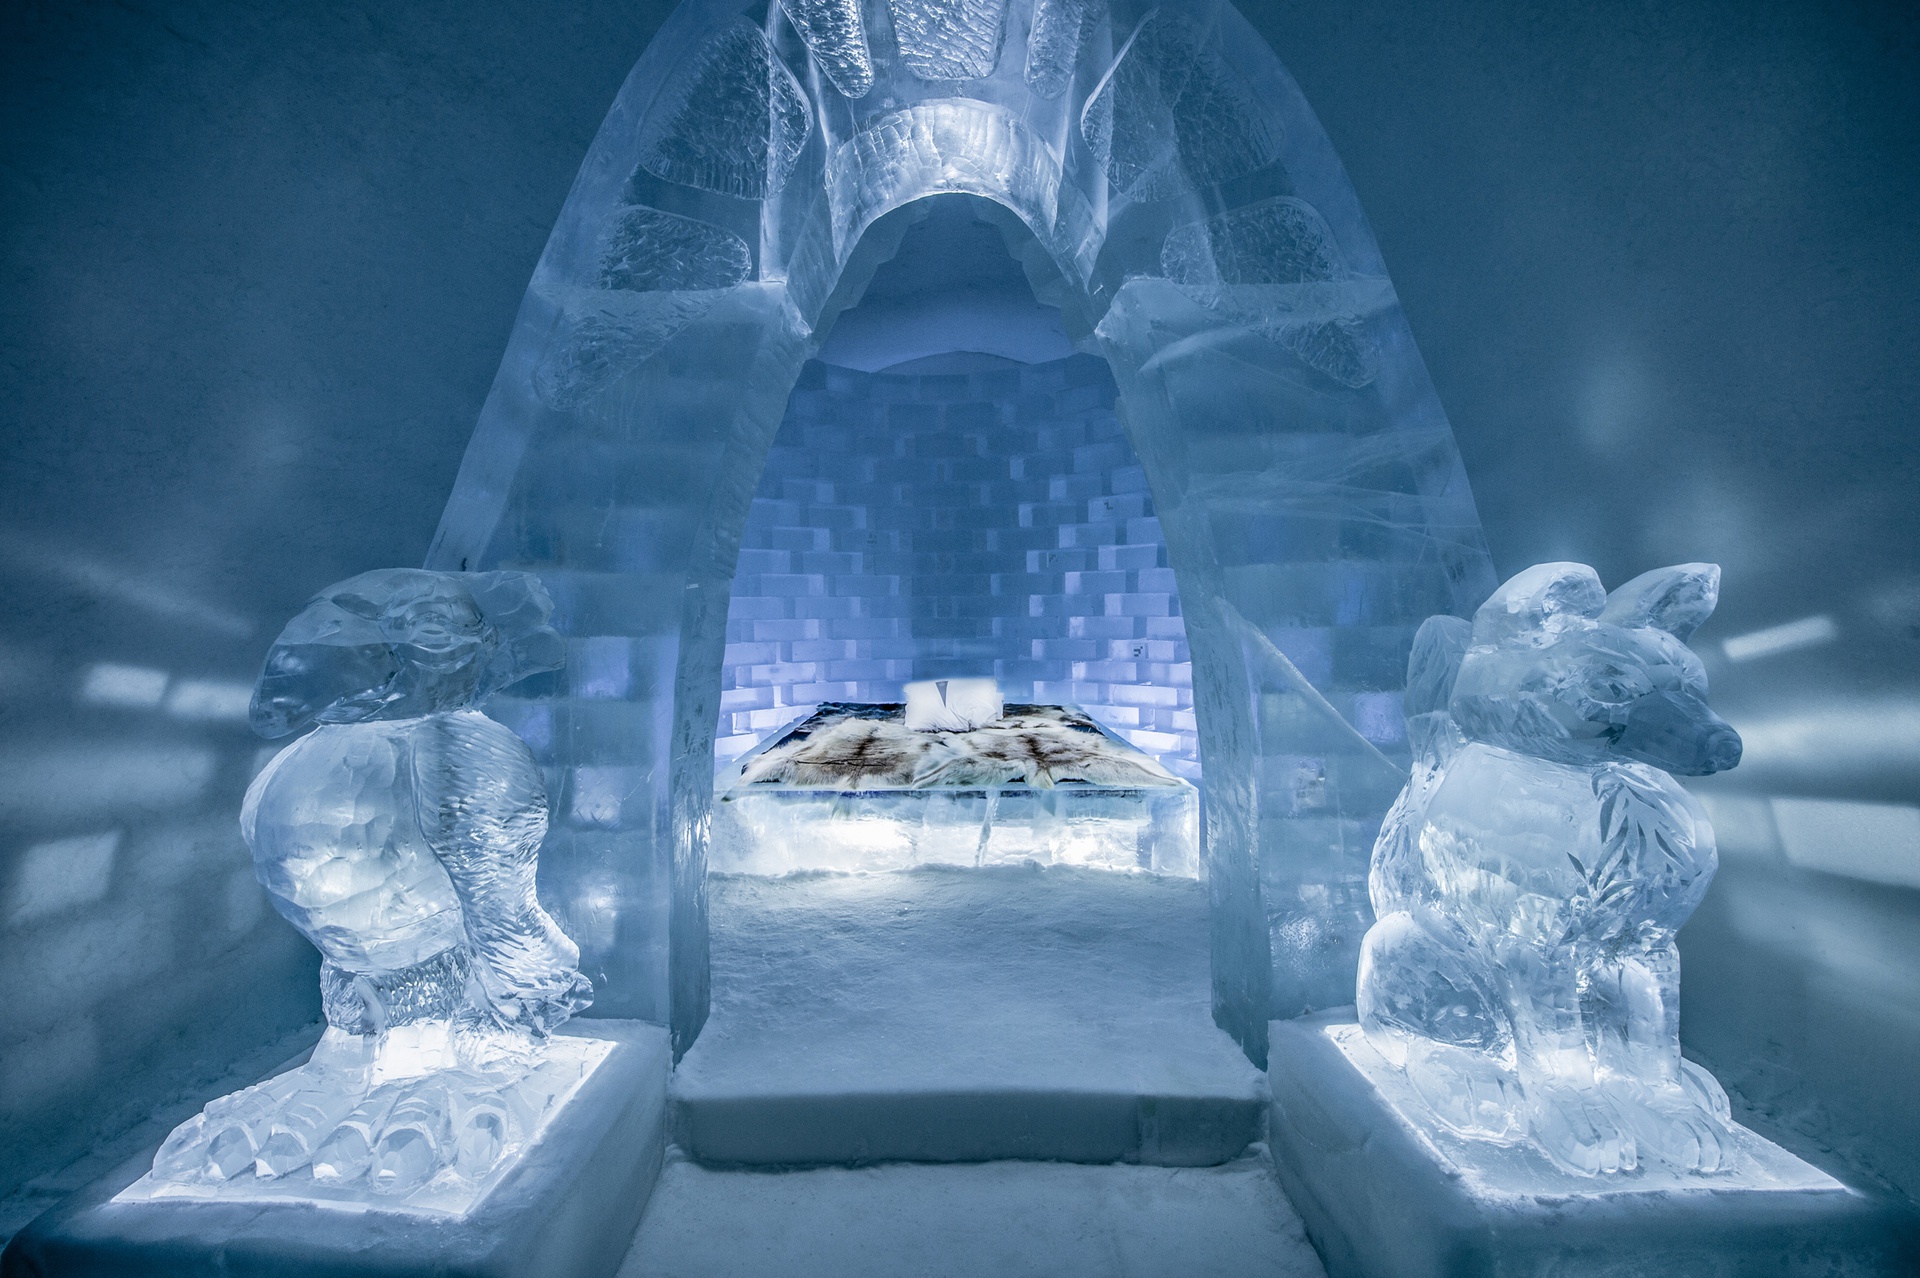 Khám phá vẻ đẹp độc nhất của khách sạn băng tuyết ở Thụy Điển - 3